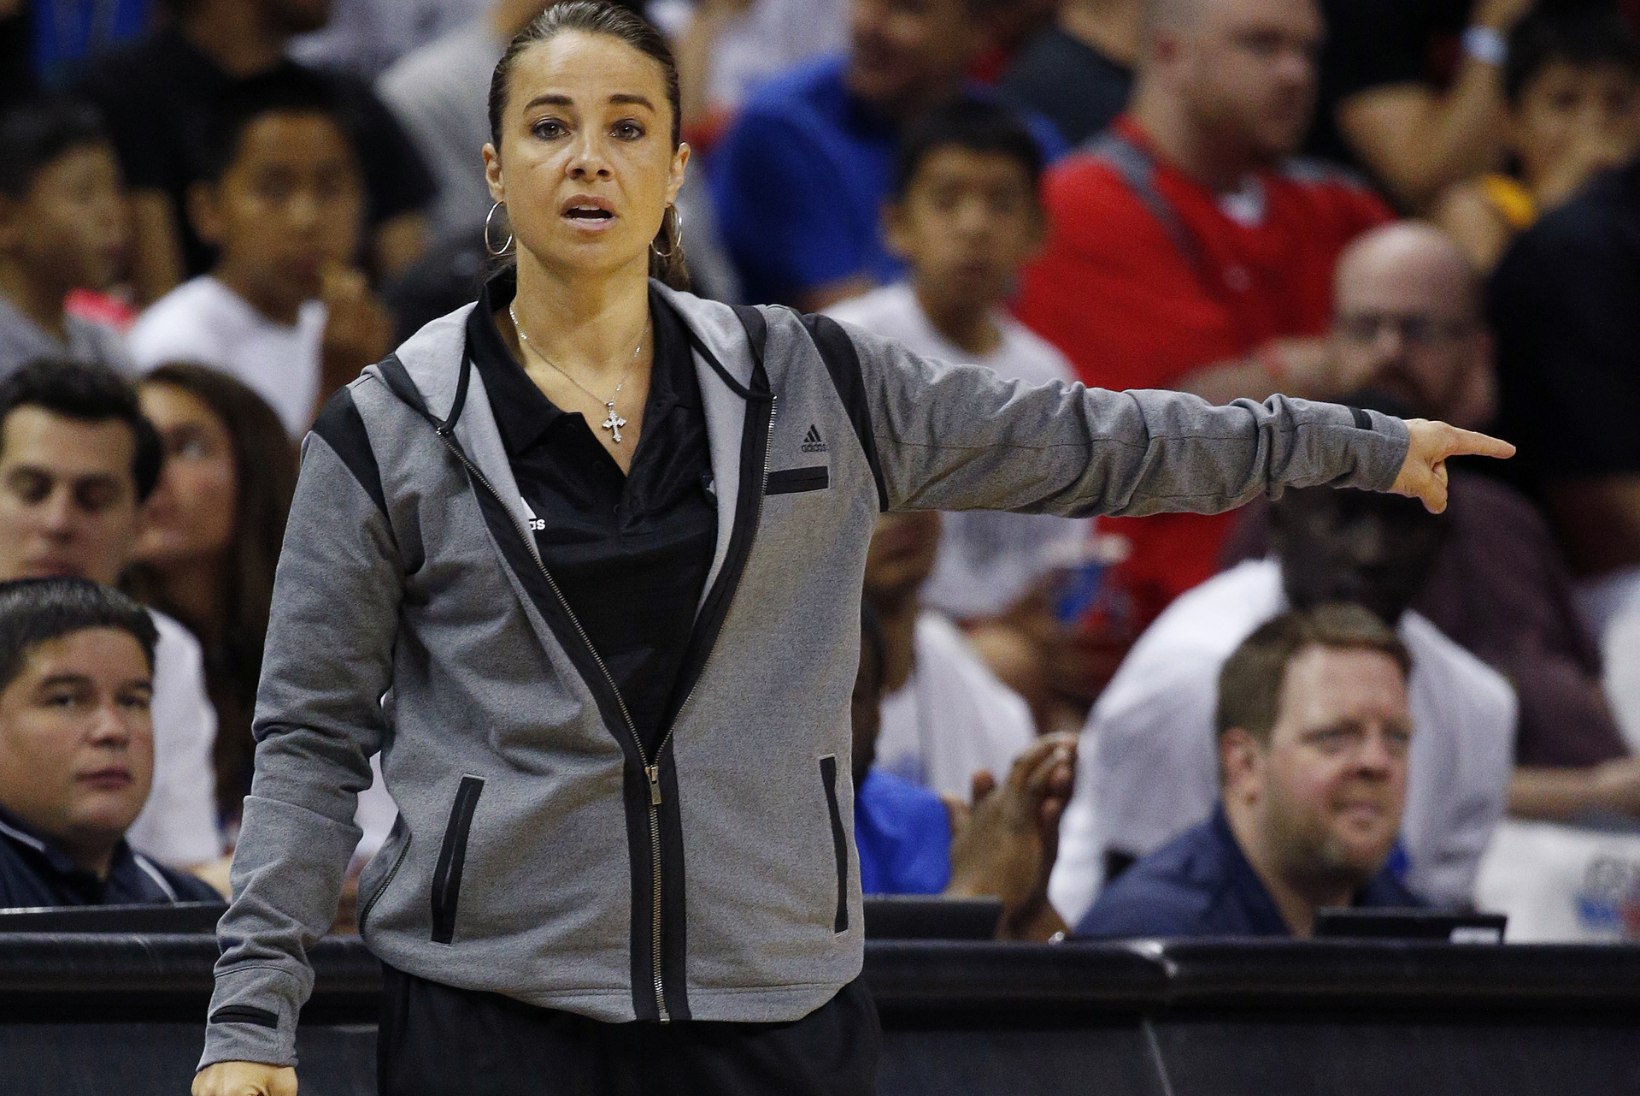 Kas NBA saab ajaloo esimese naispeatreeneri?